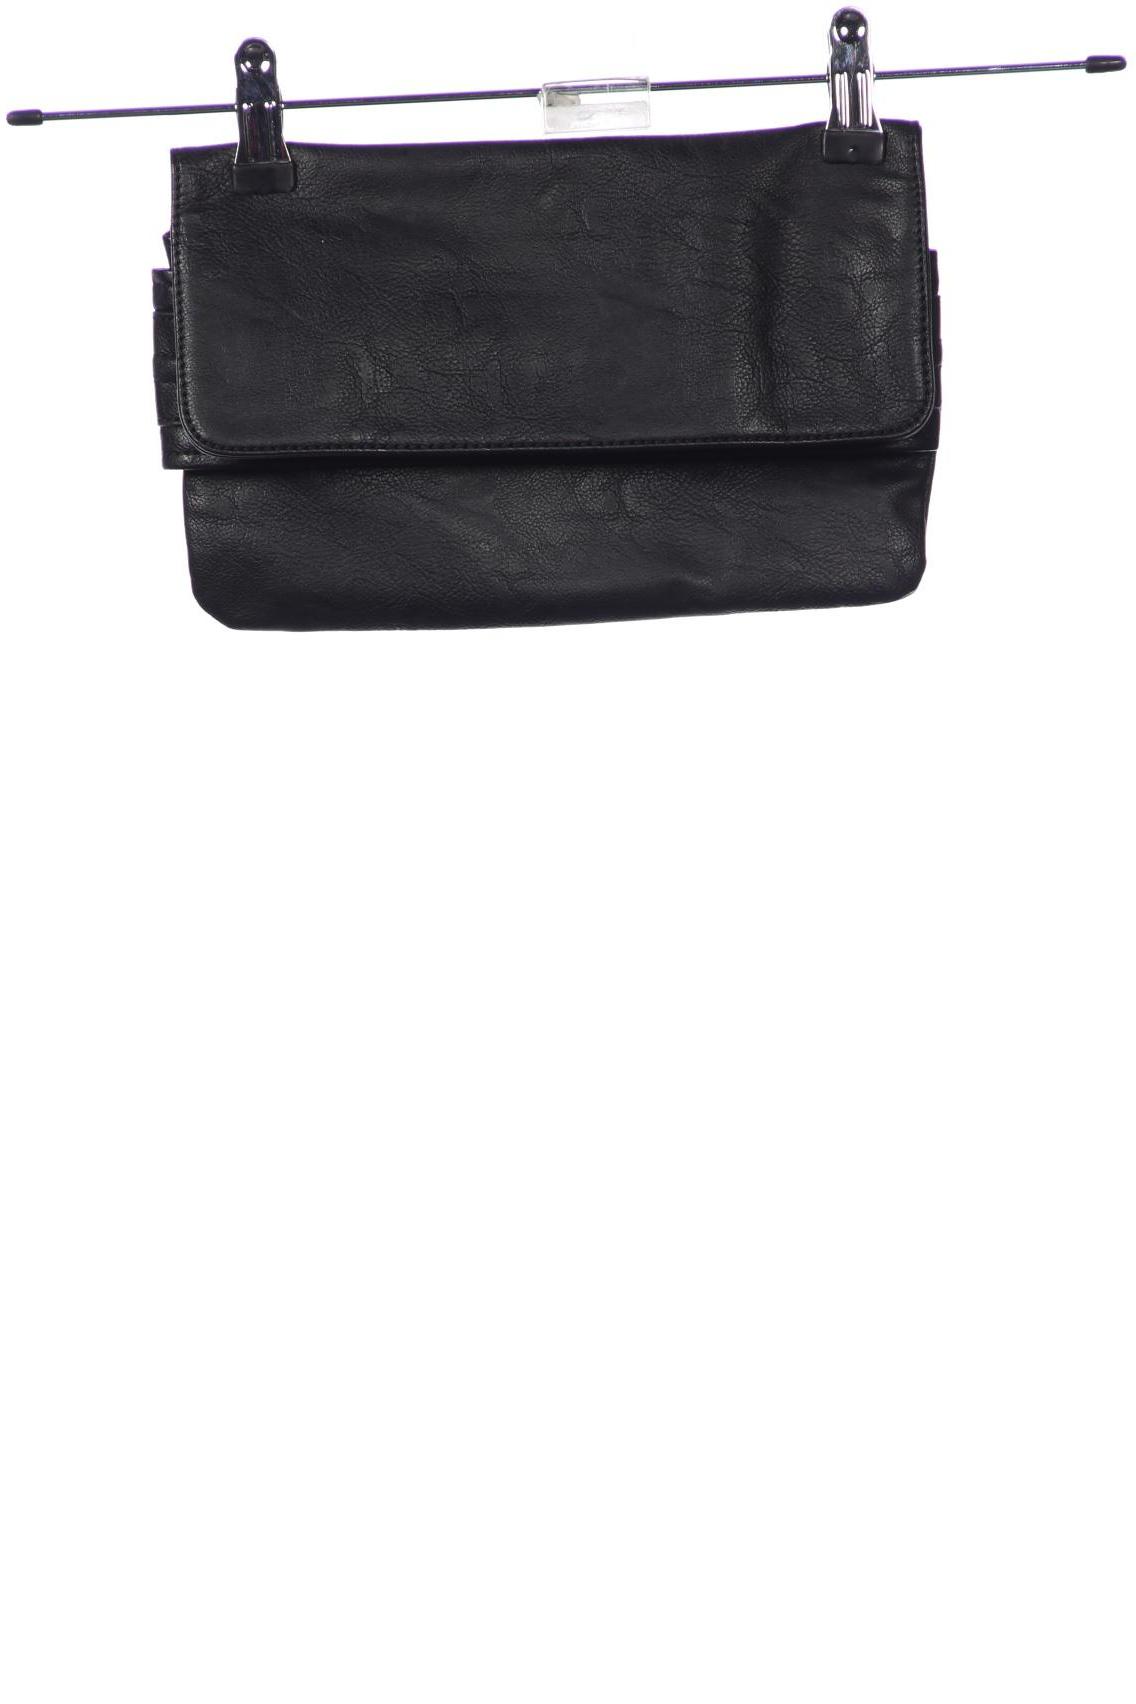 Esprit Damen Handtasche, schwarz von Esprit